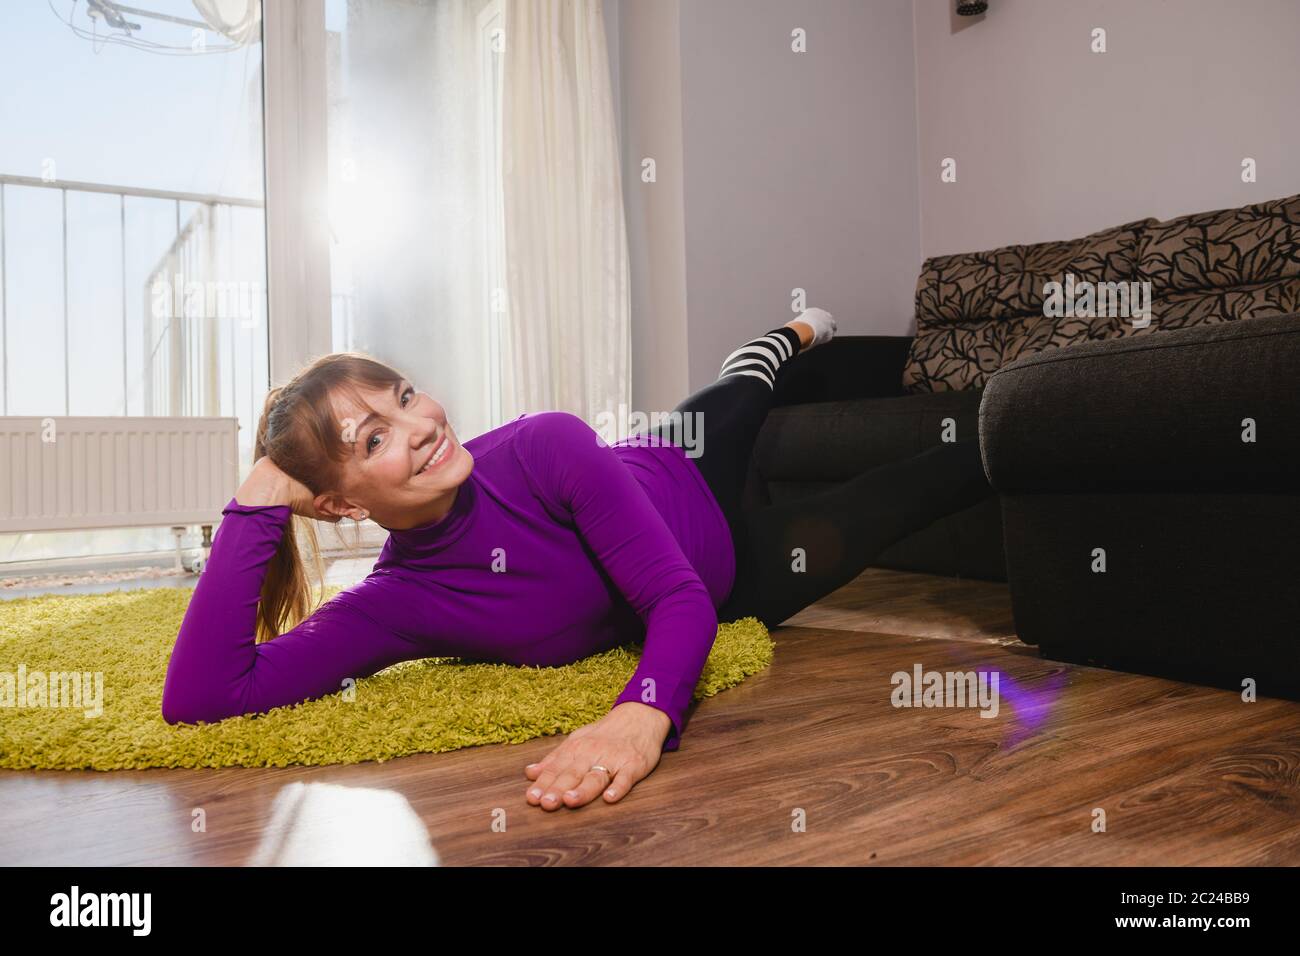 Lächelnd nette alte Frau hat Fitness-Training drinnen, heben die Beine auf der Couch und lag auf dem Boden Teppich in Sport Leggings und lila Rollkragen, Senior Aktivität Stockfoto